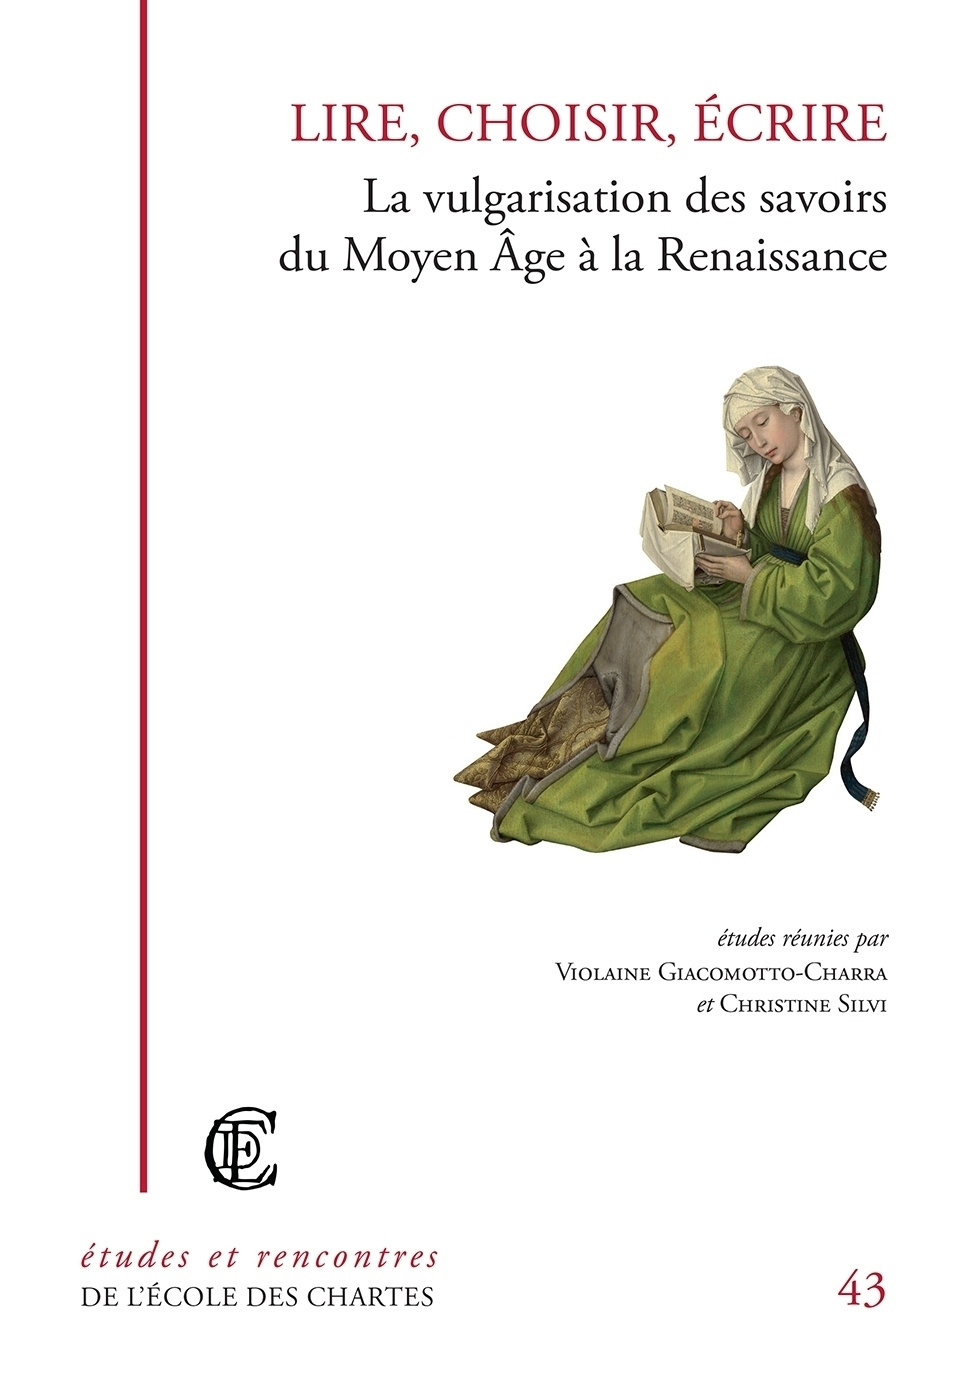 Couverture de "Lire, choisir, écrire : la vulgarisation des savoirs du Moyen Âge à la Renaissance" © Énc